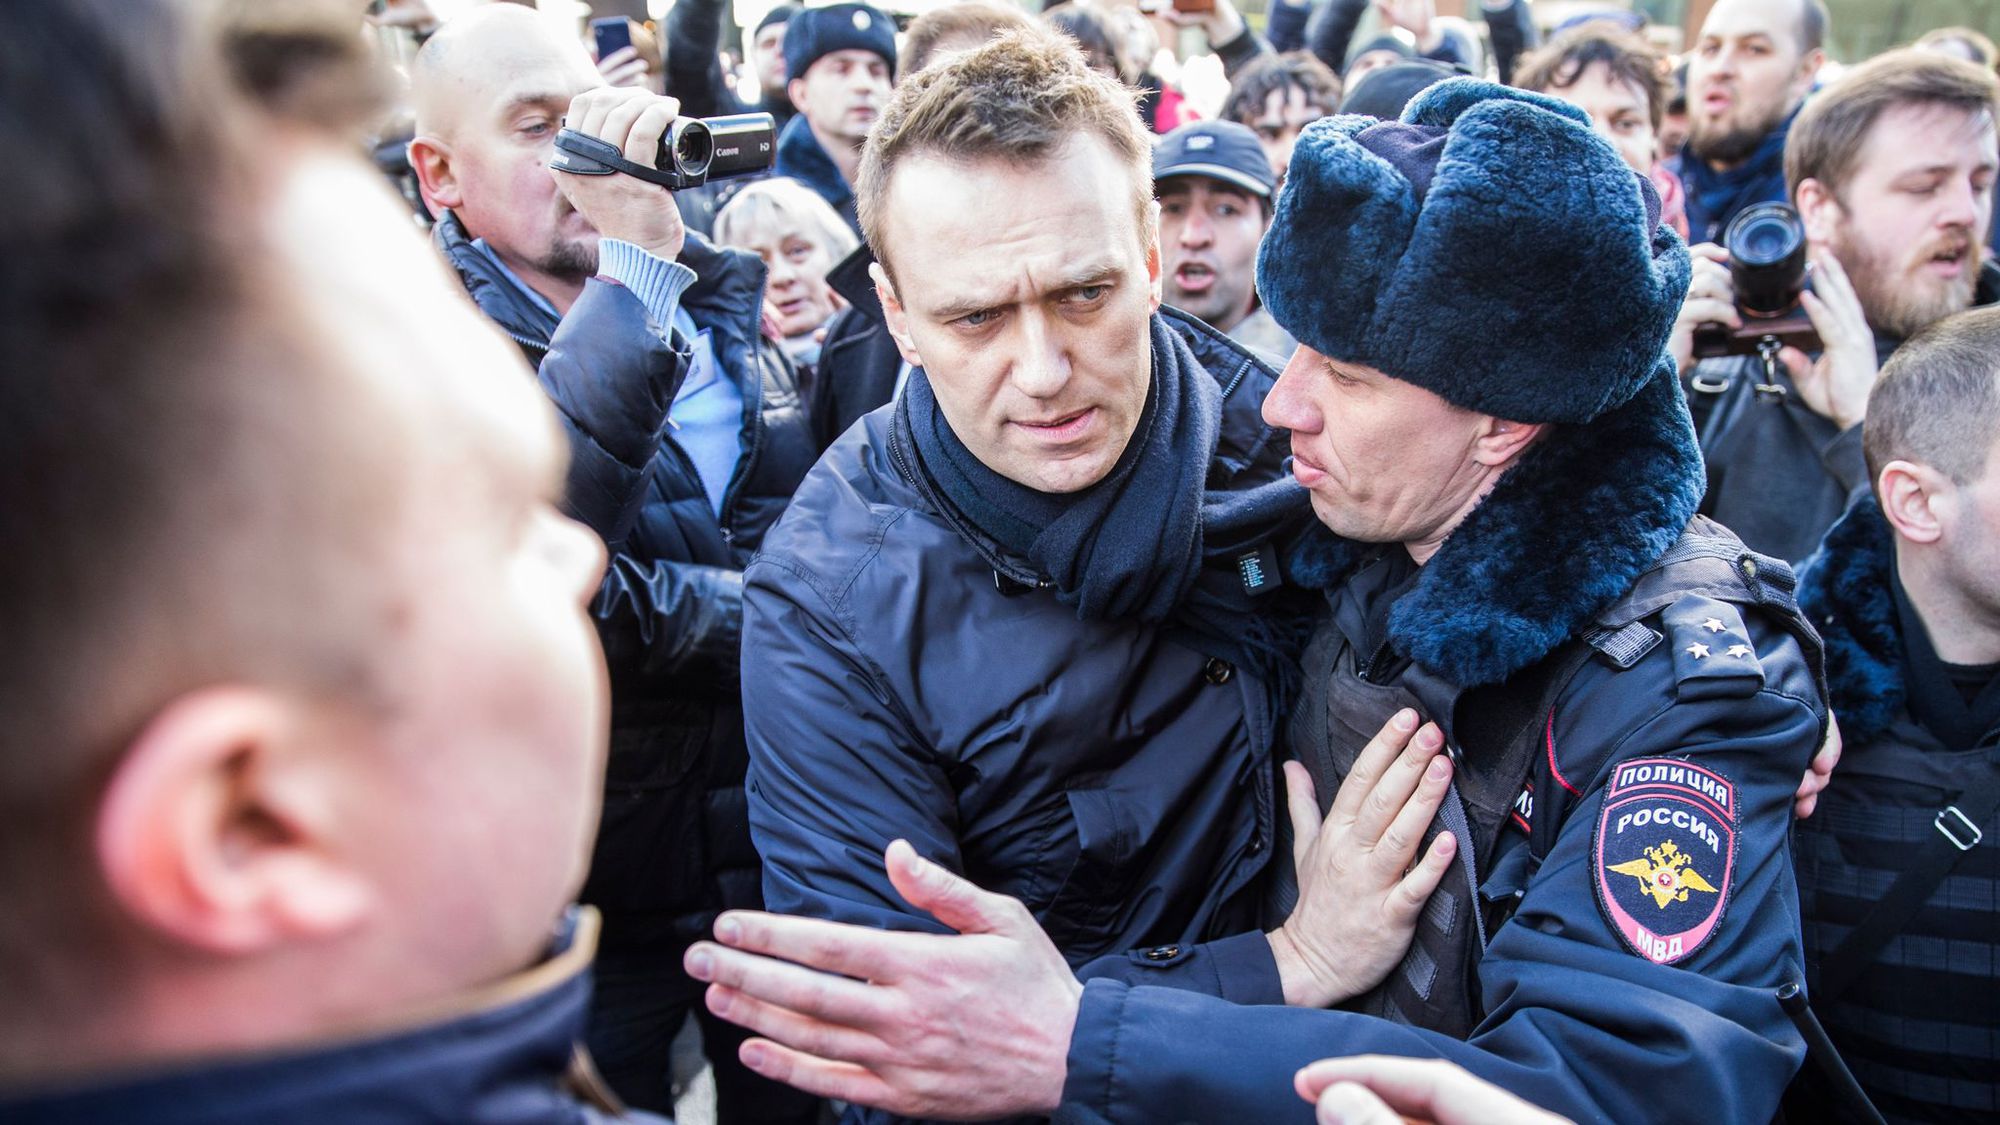 Russie: Navalny, l'opposant anticorruption prêt à défier Poutine - L'Express